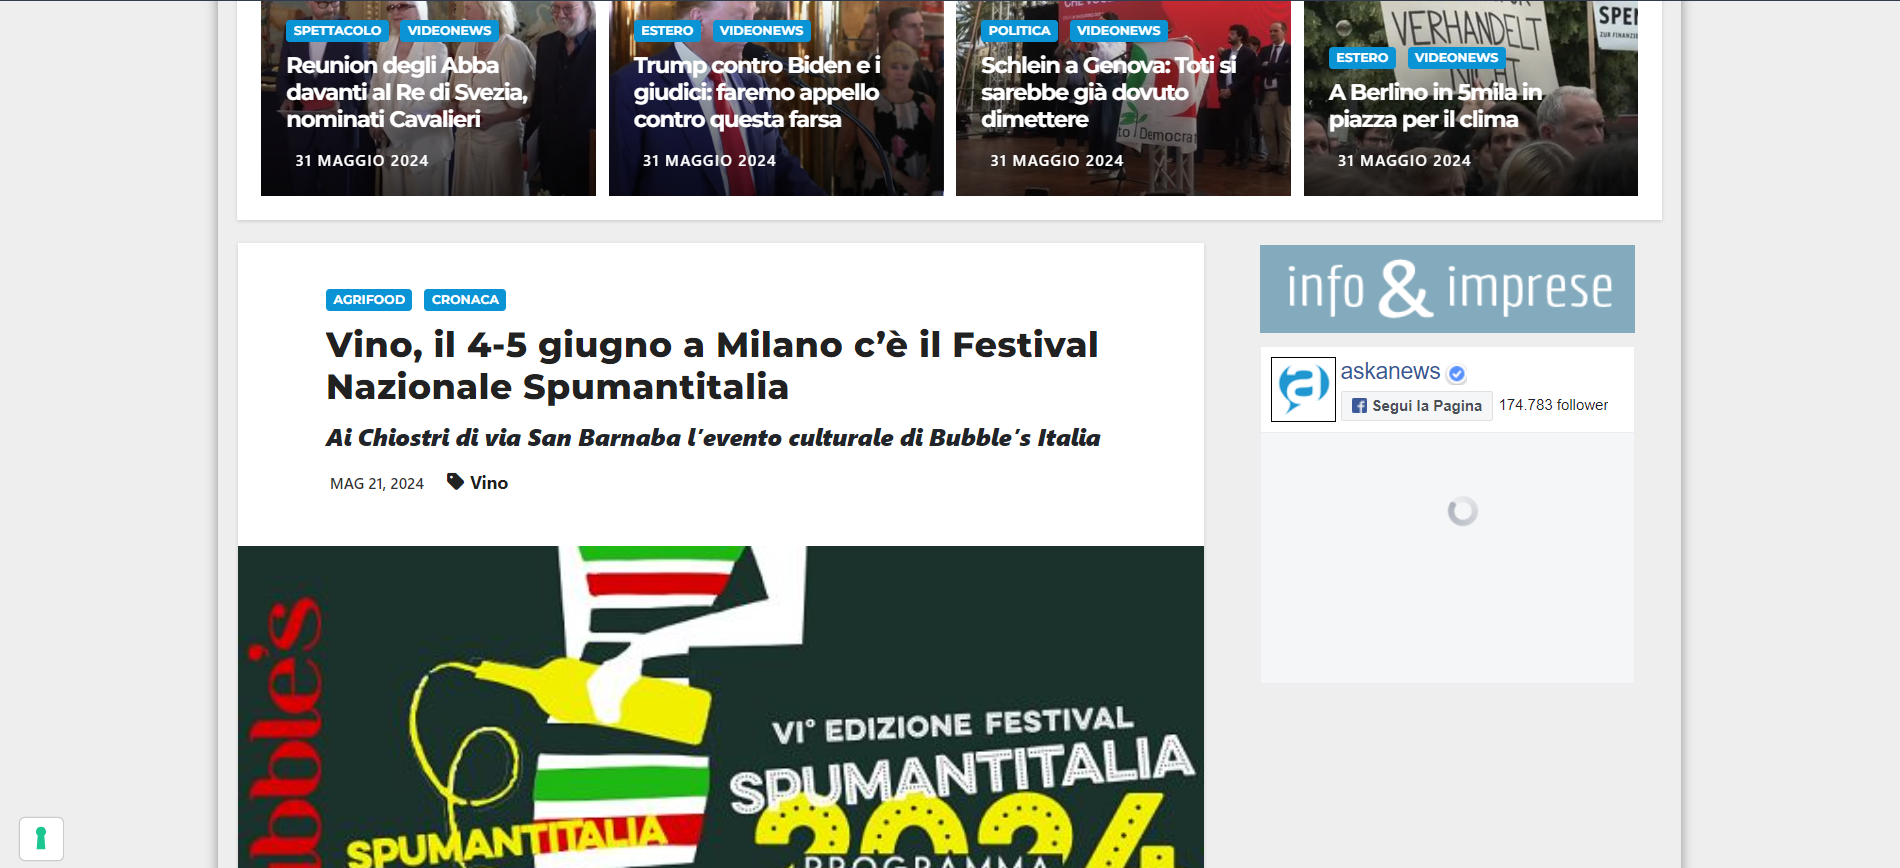 Vino, il 4-5 giugno a Milano c’è il Festival Nazionale Spumantitalia